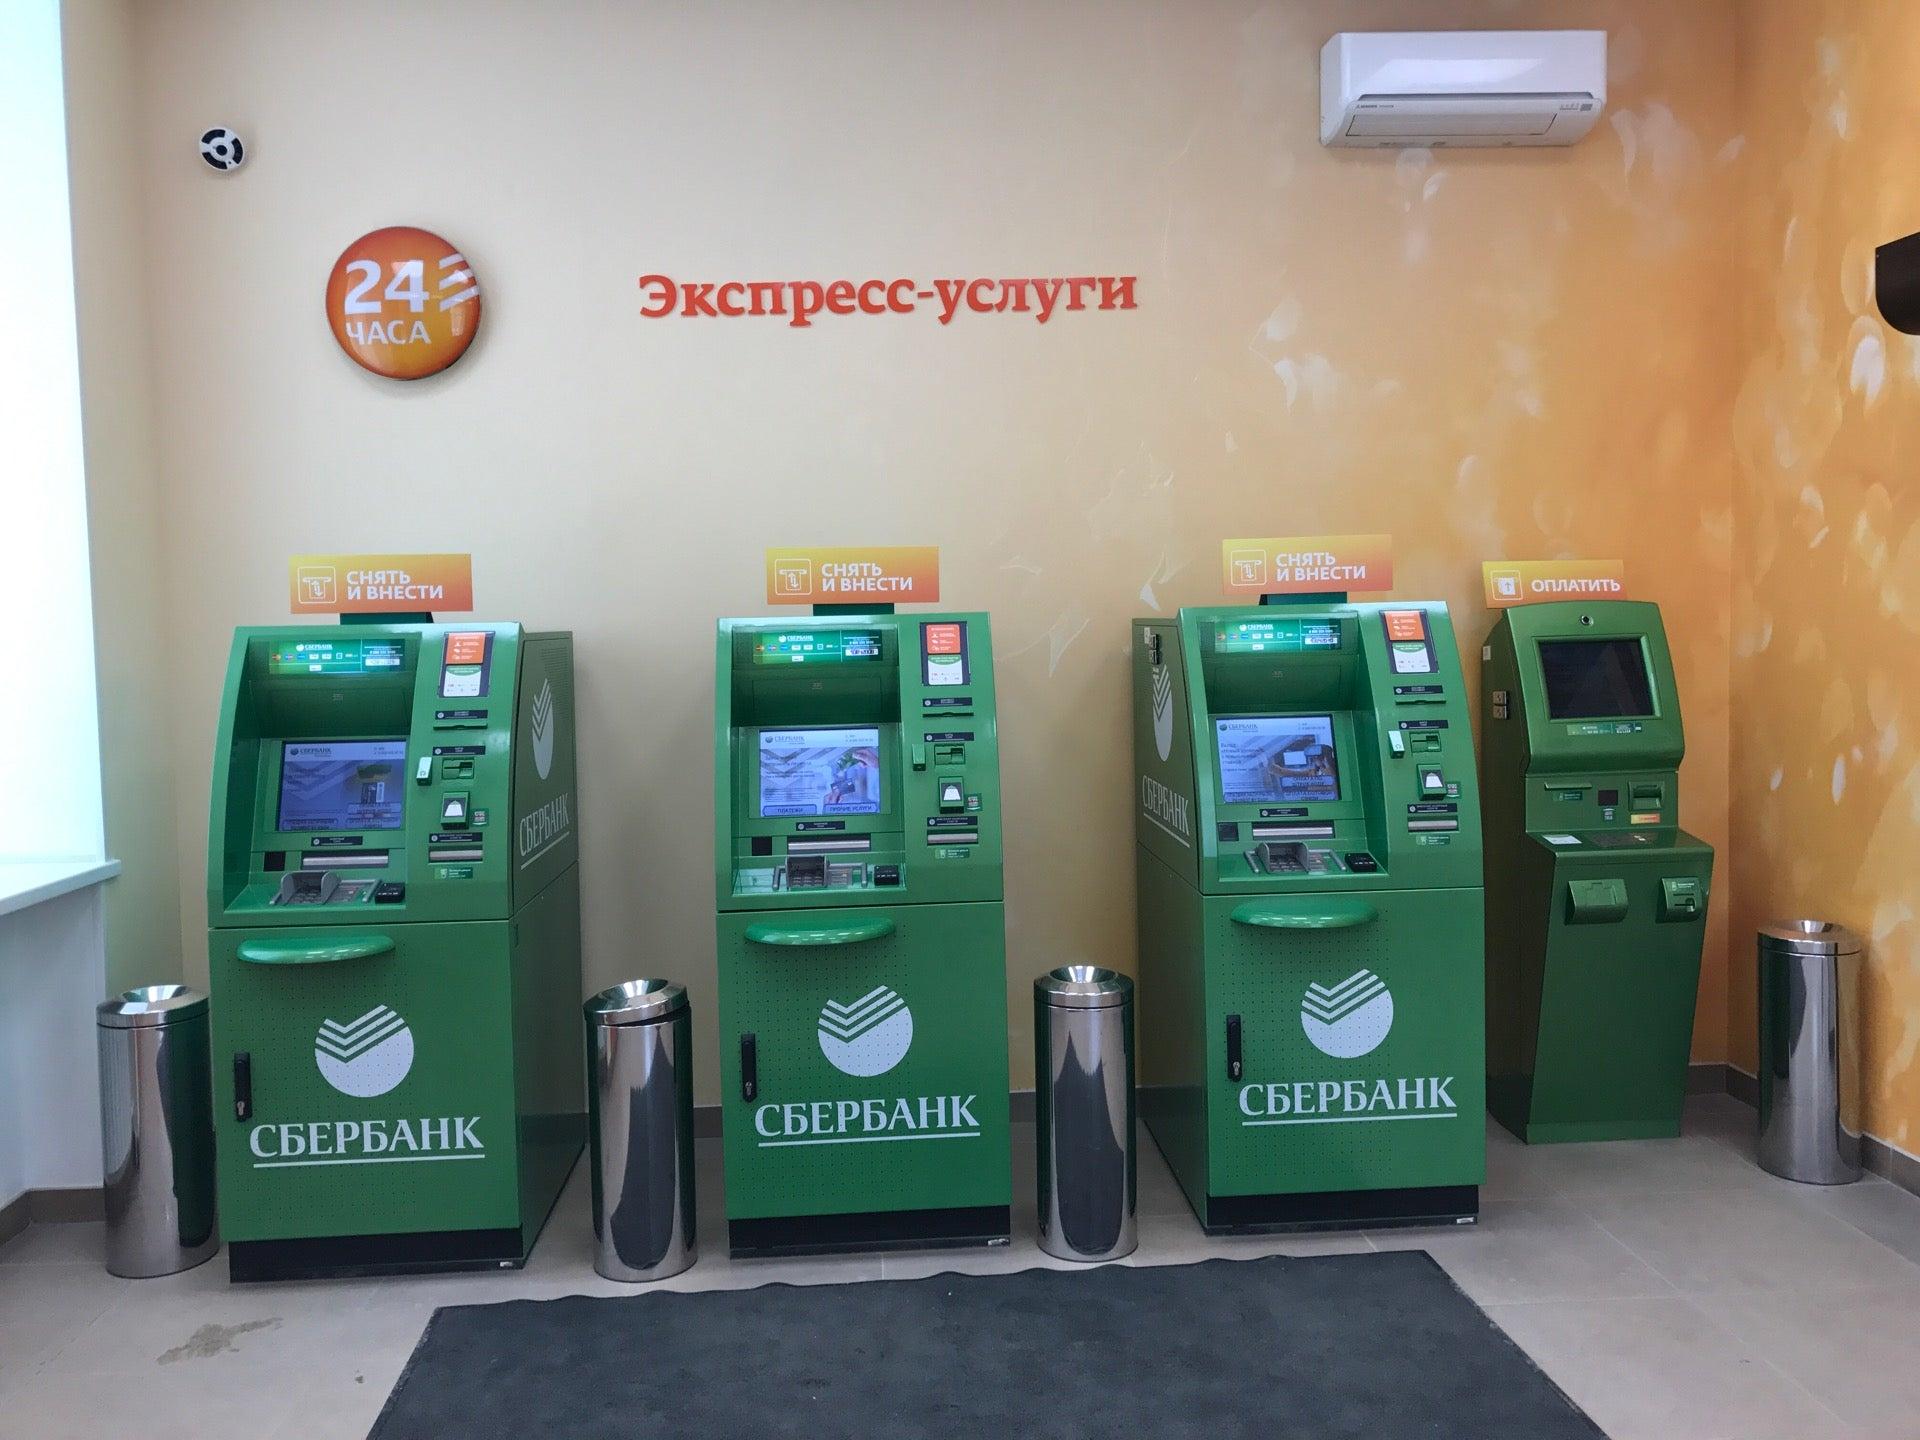 Сбербанк банкомат валюта. Красный проспект 46 Новосибирск Сбербанк. Сбербанк аппарат. Банкомат. Банкомат Сбербанка.